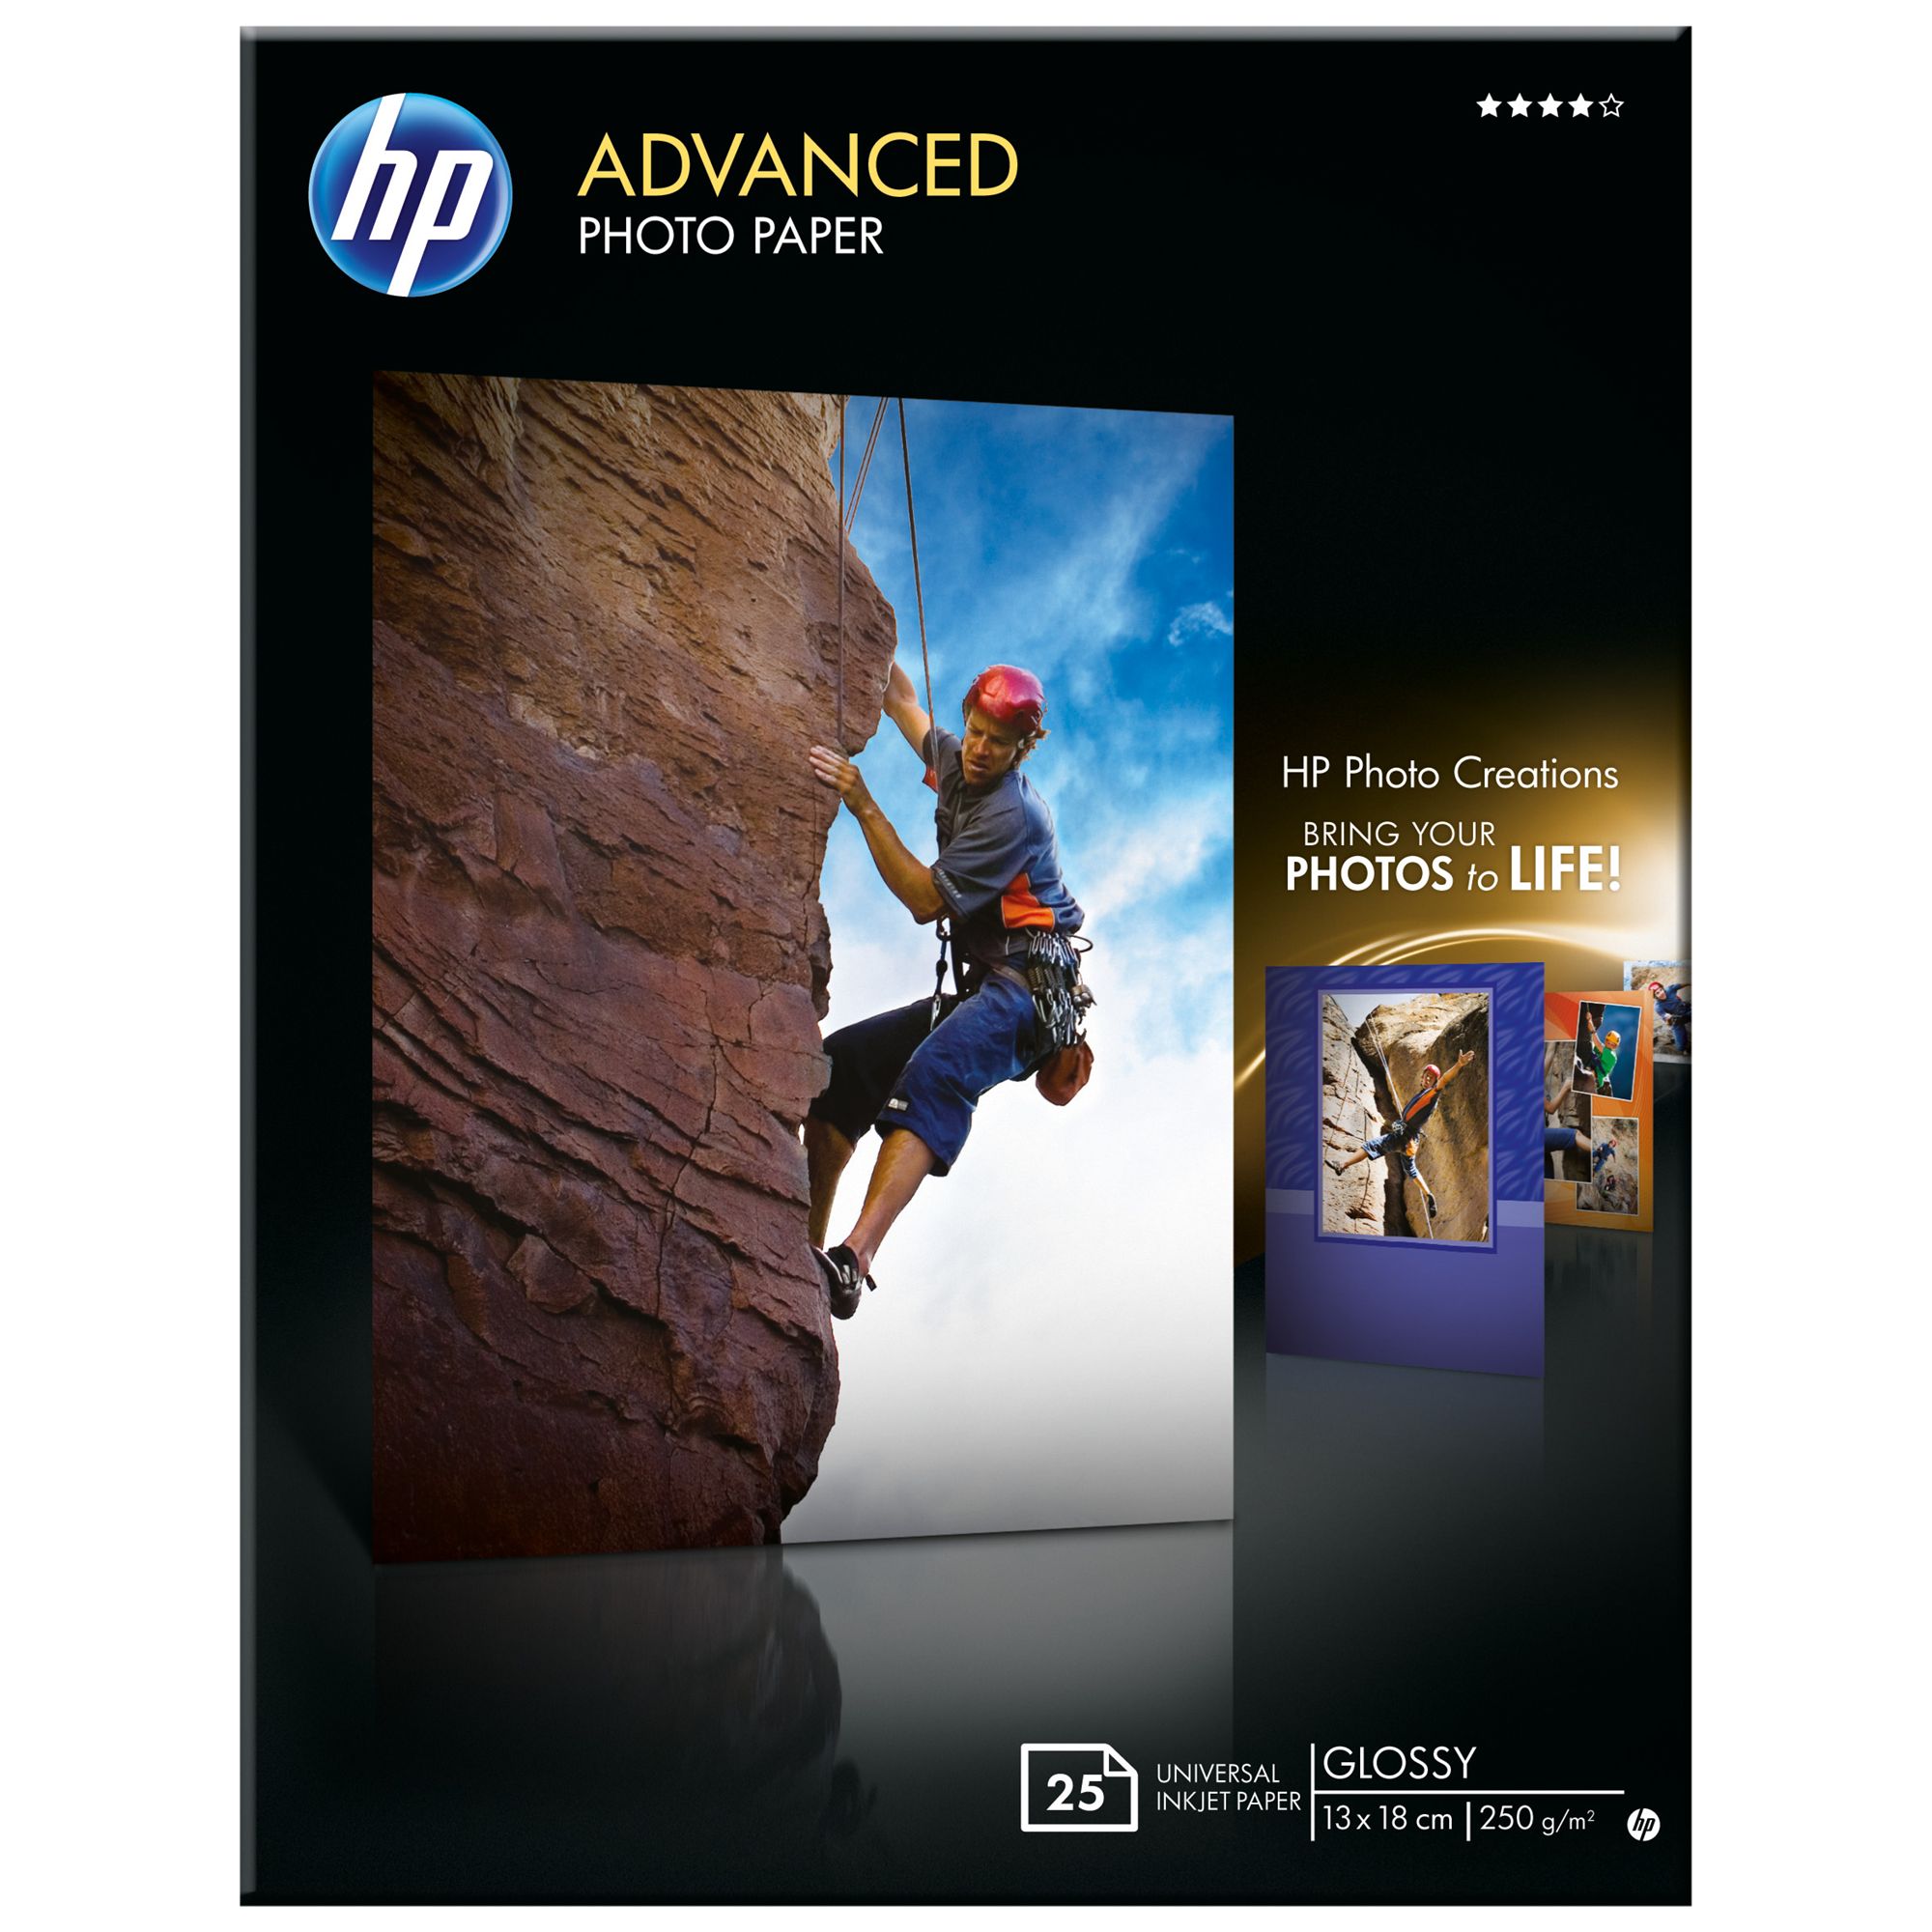 HP Advanced Photo Paper, White, 13 x 18cm, 25